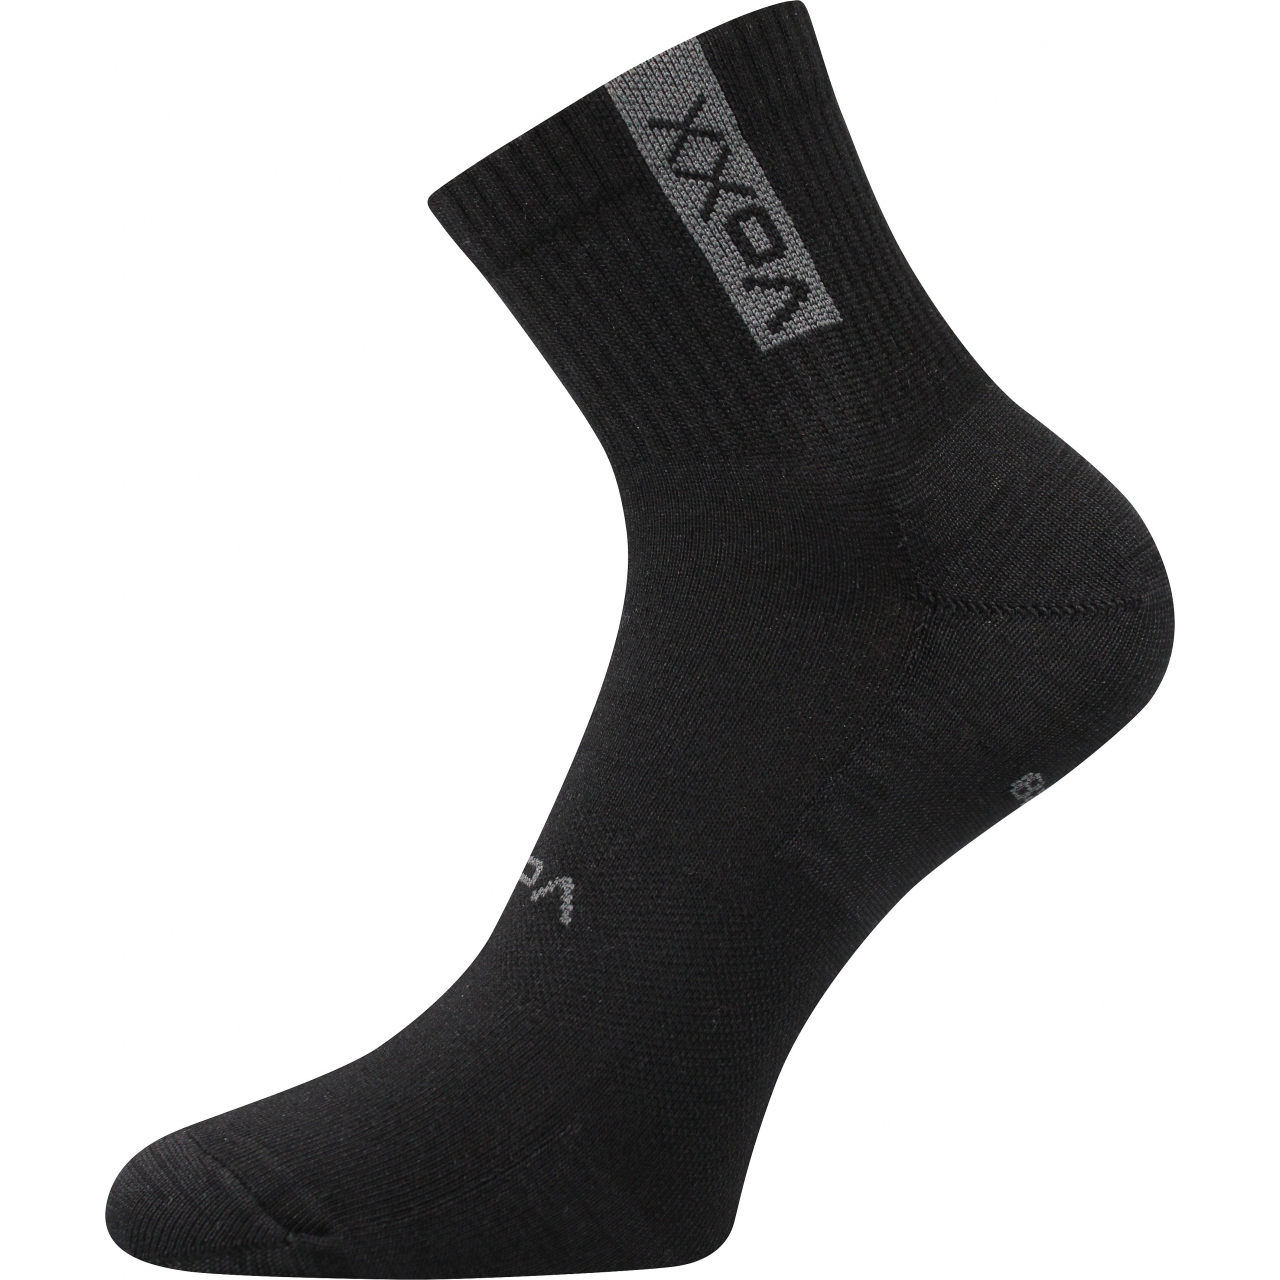 Ponožky sportovní unisex Voxx Brox - černé, 35-38